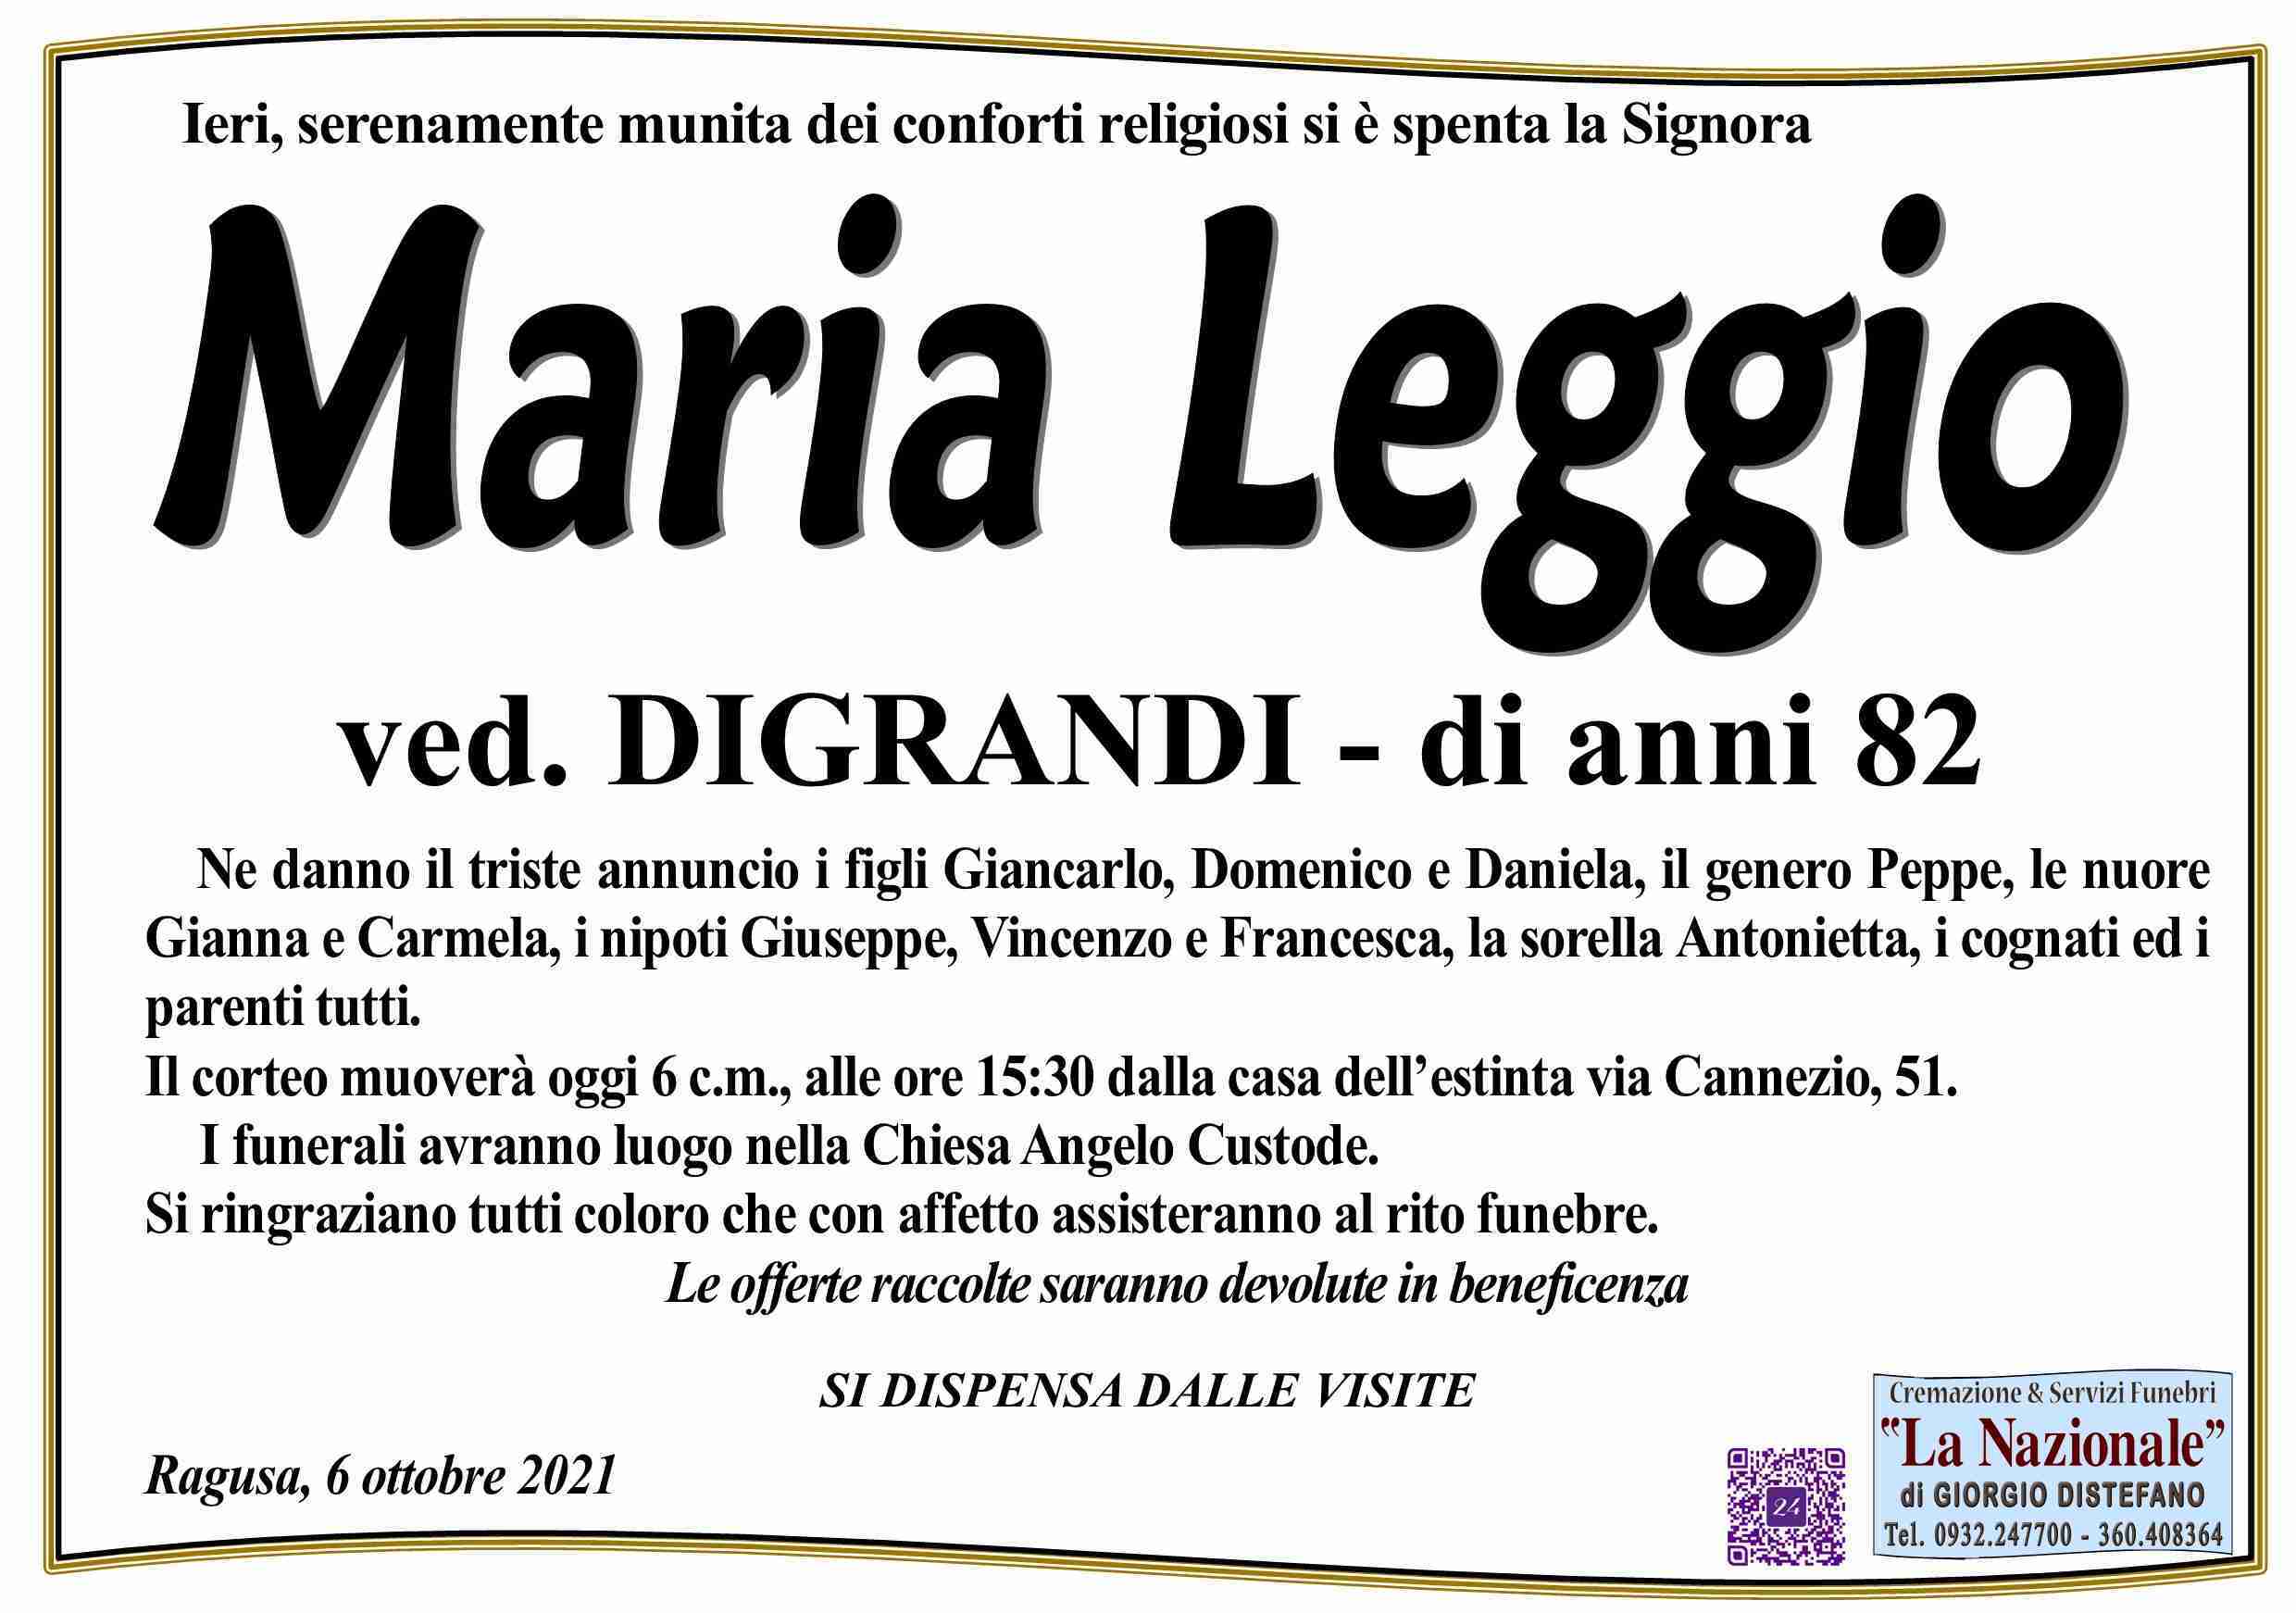 Maria Leggio